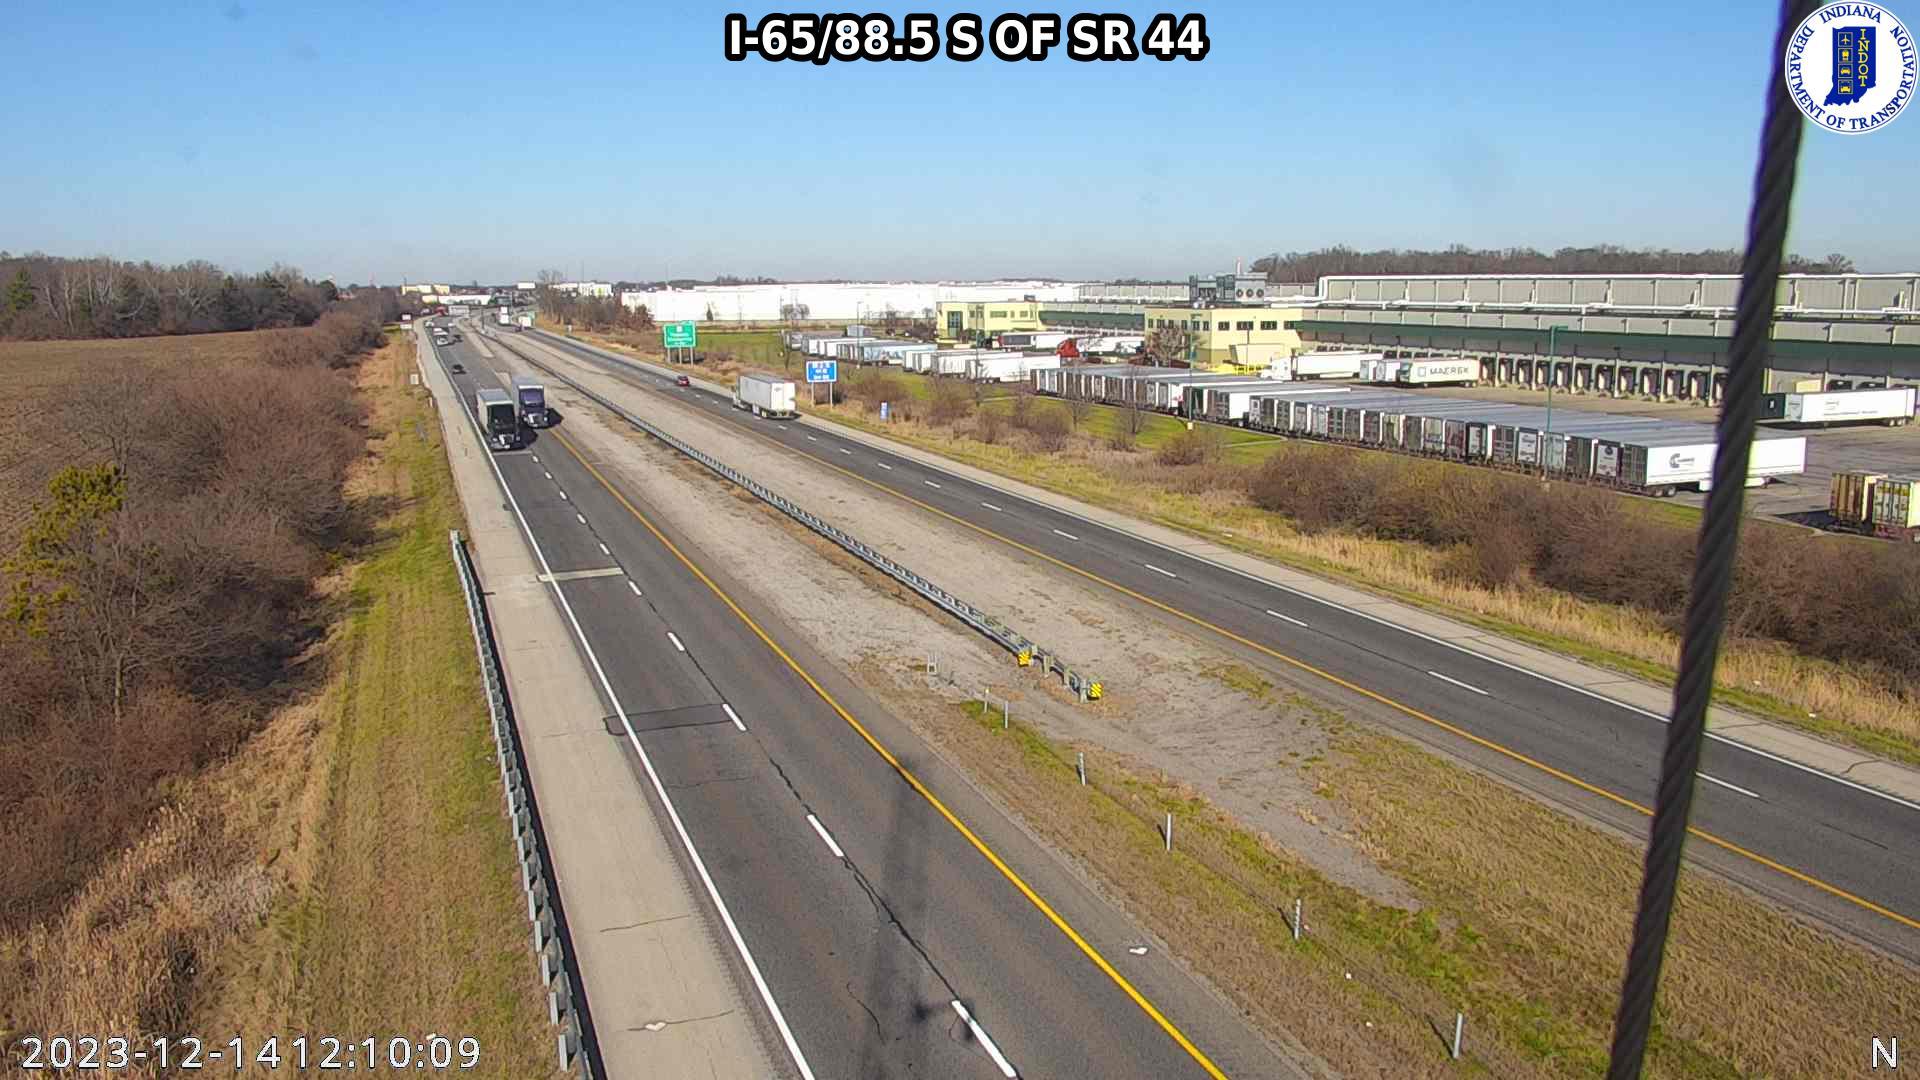 Franklin: I-65: I-65/88.5 S OF SR Traffic Camera